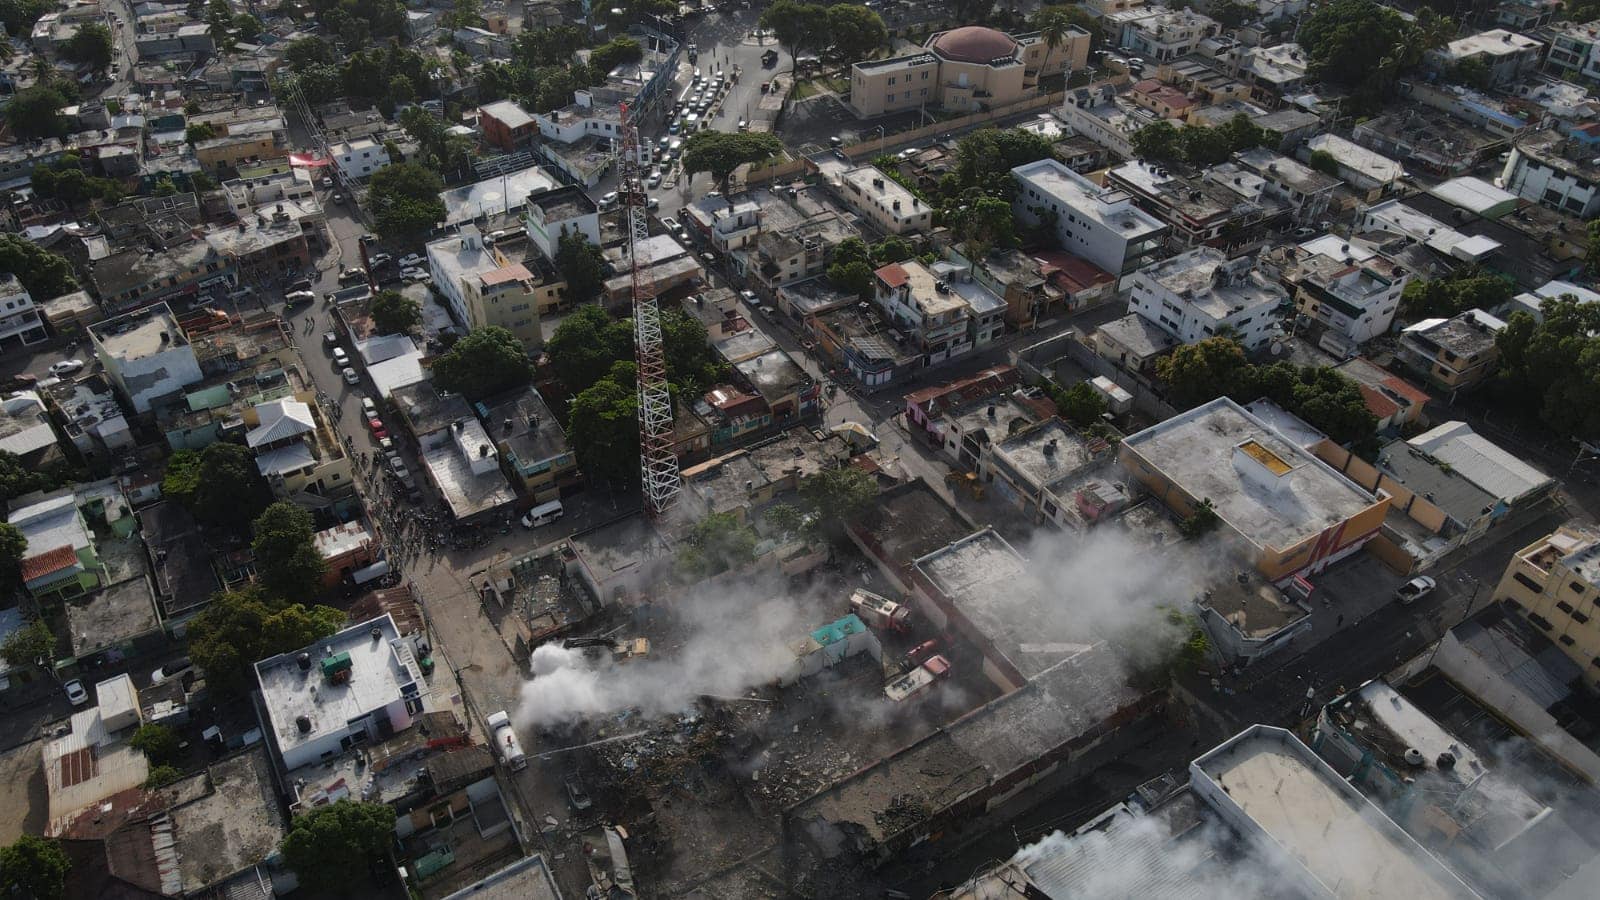 Vista aérea de la zona afectada por la explosión que sacudió San Cristóbal la tarde del lunes 14 de agosto.